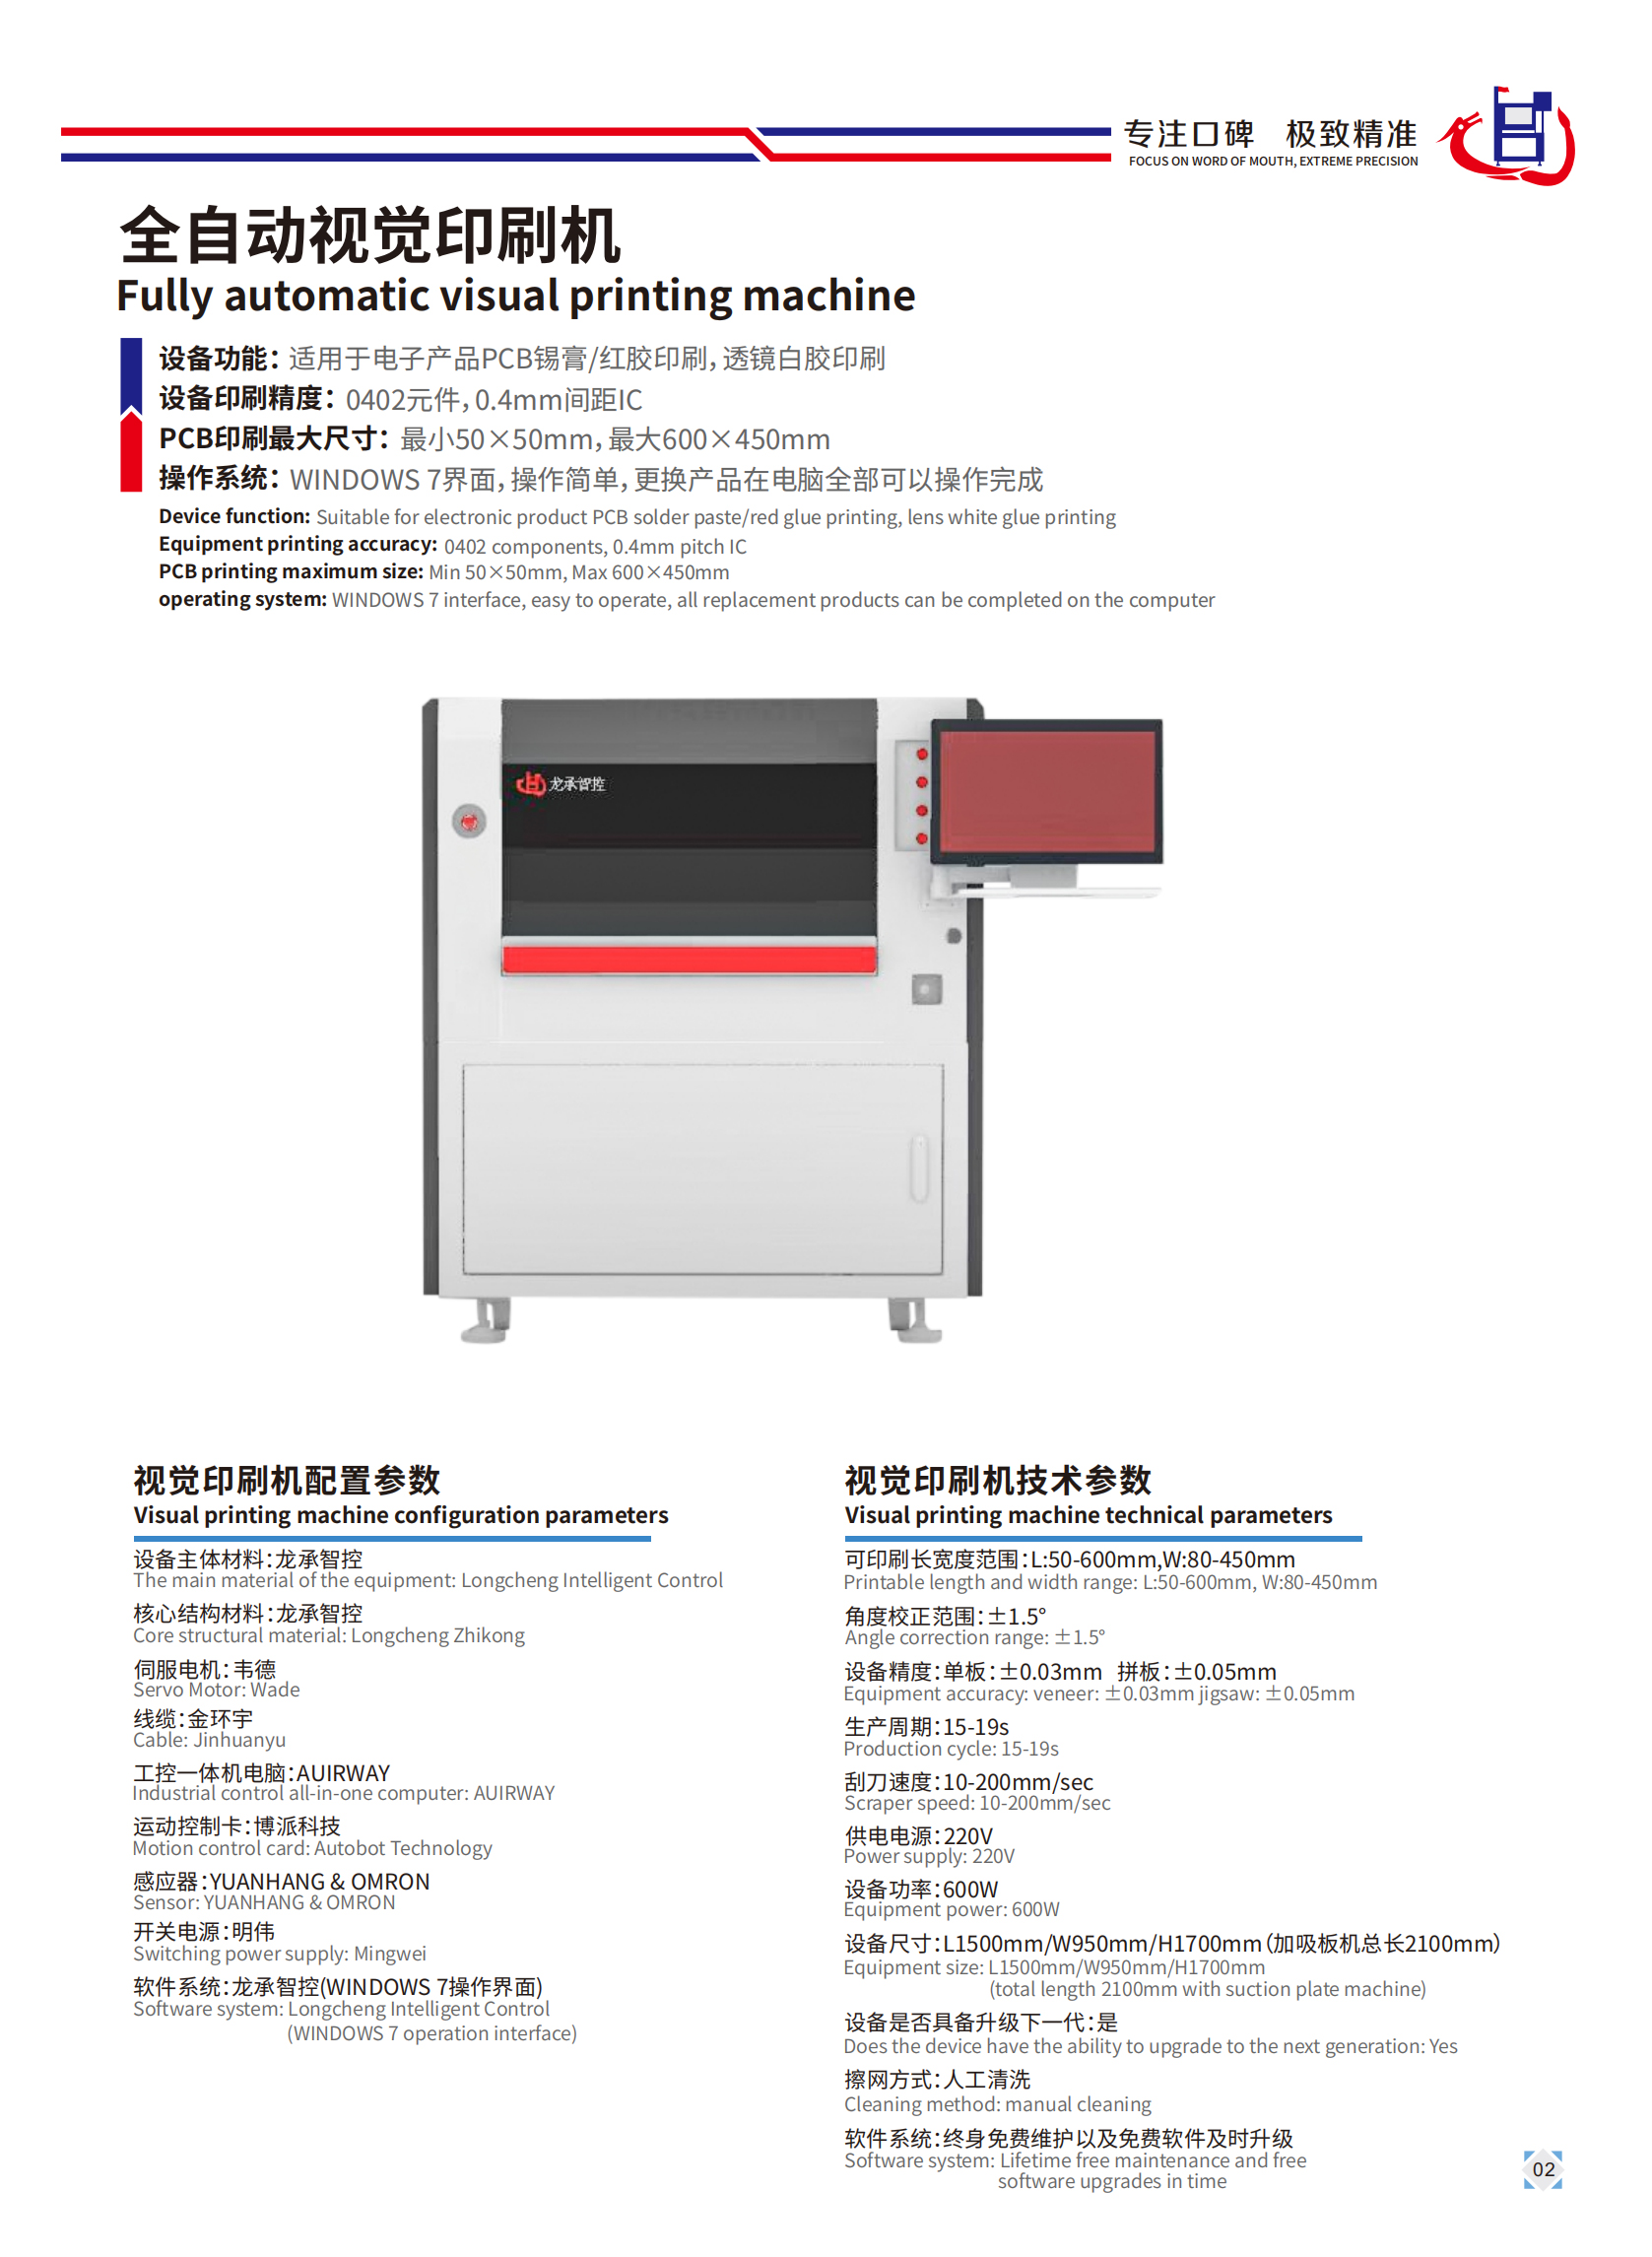 全自動視覺印刷機(圖1)